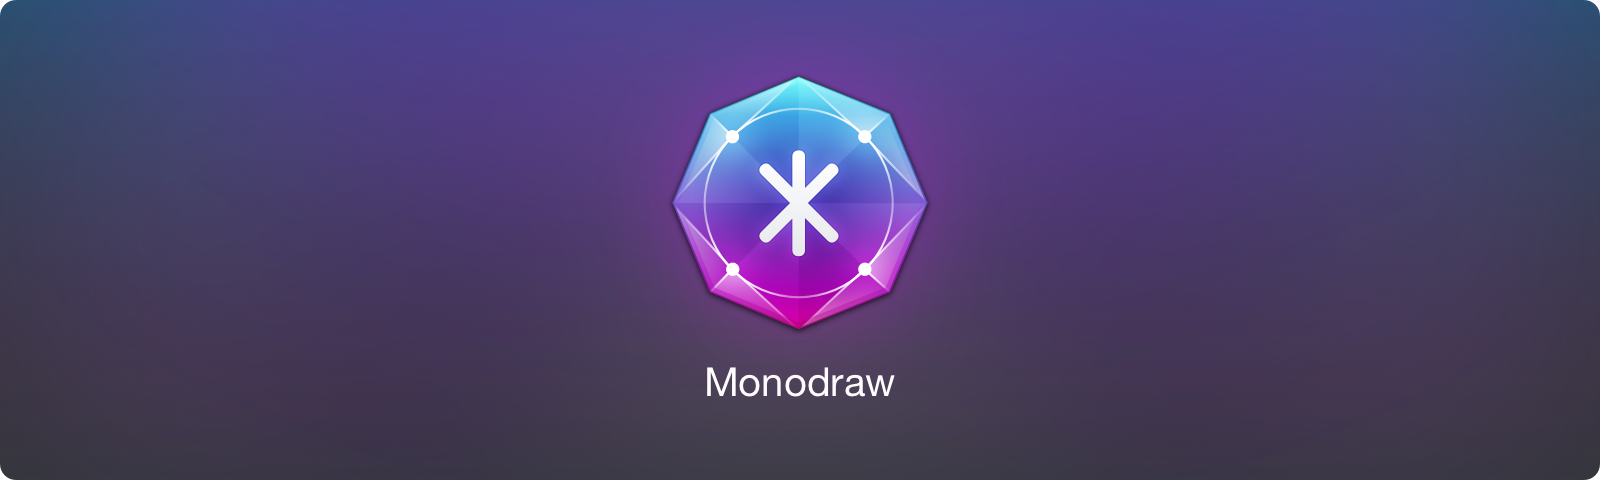 Monodraw